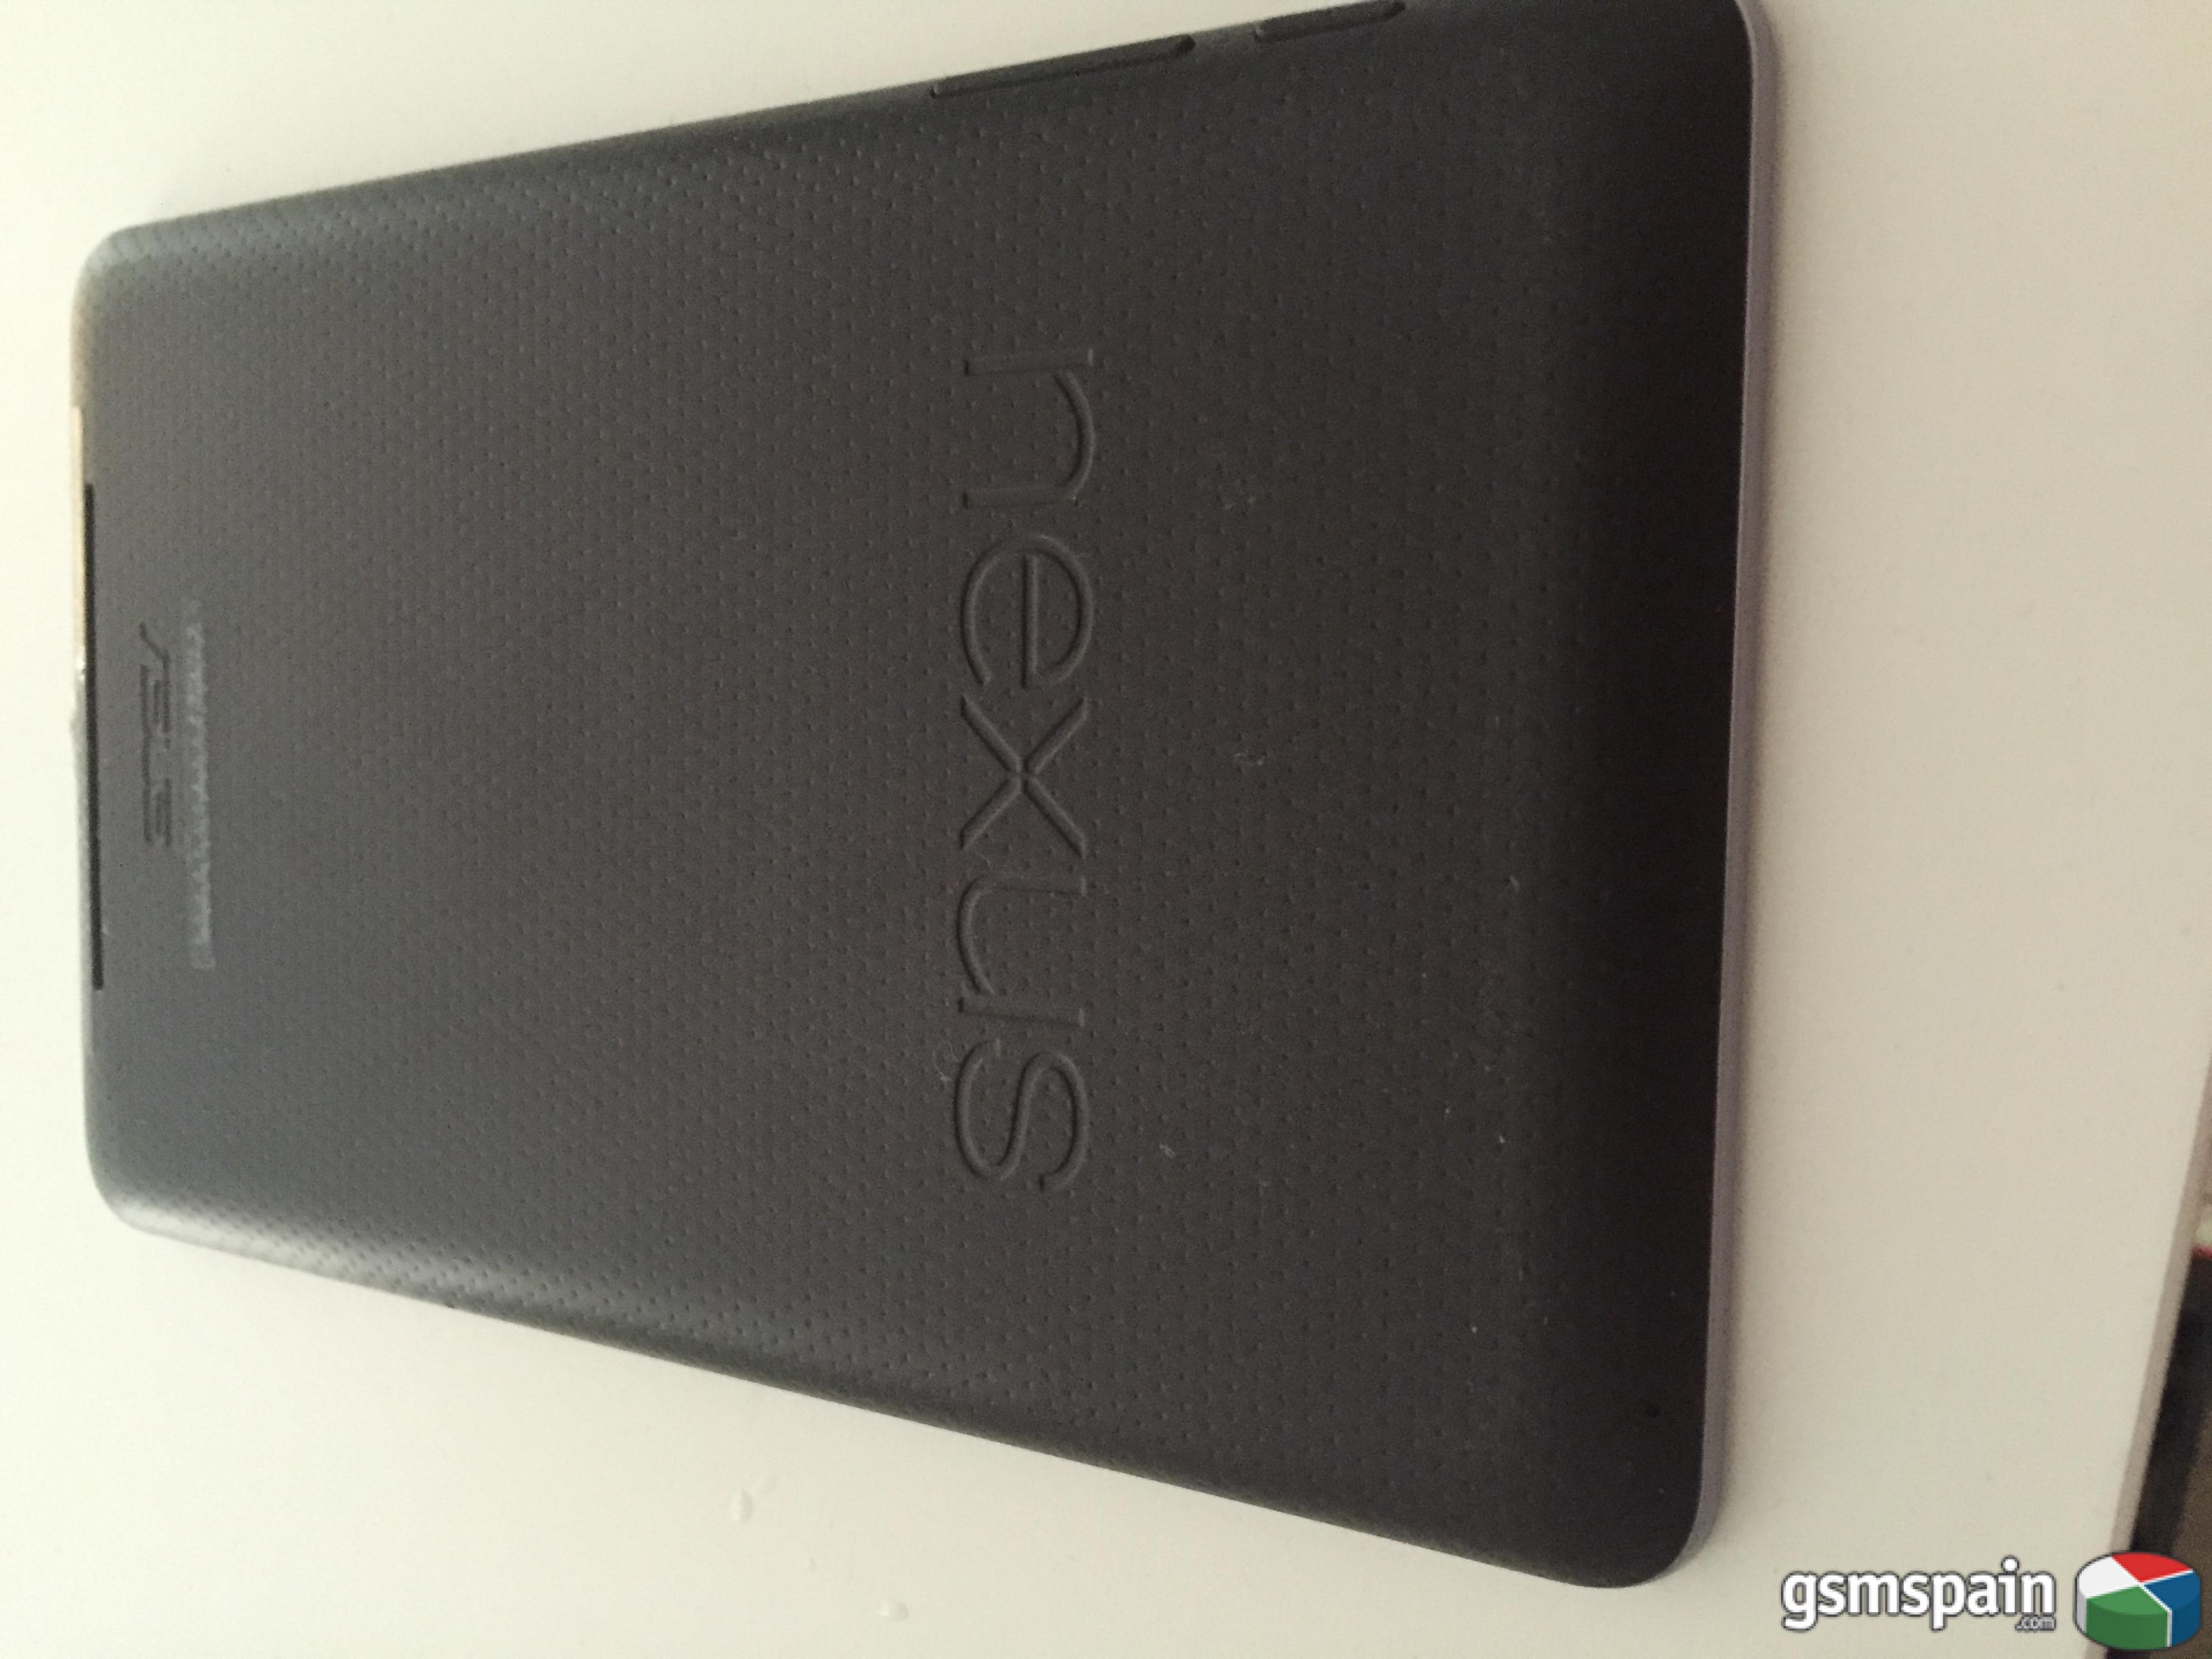 [VENDO] Nexus 7 8gb modelo del 2012 + fundas originales